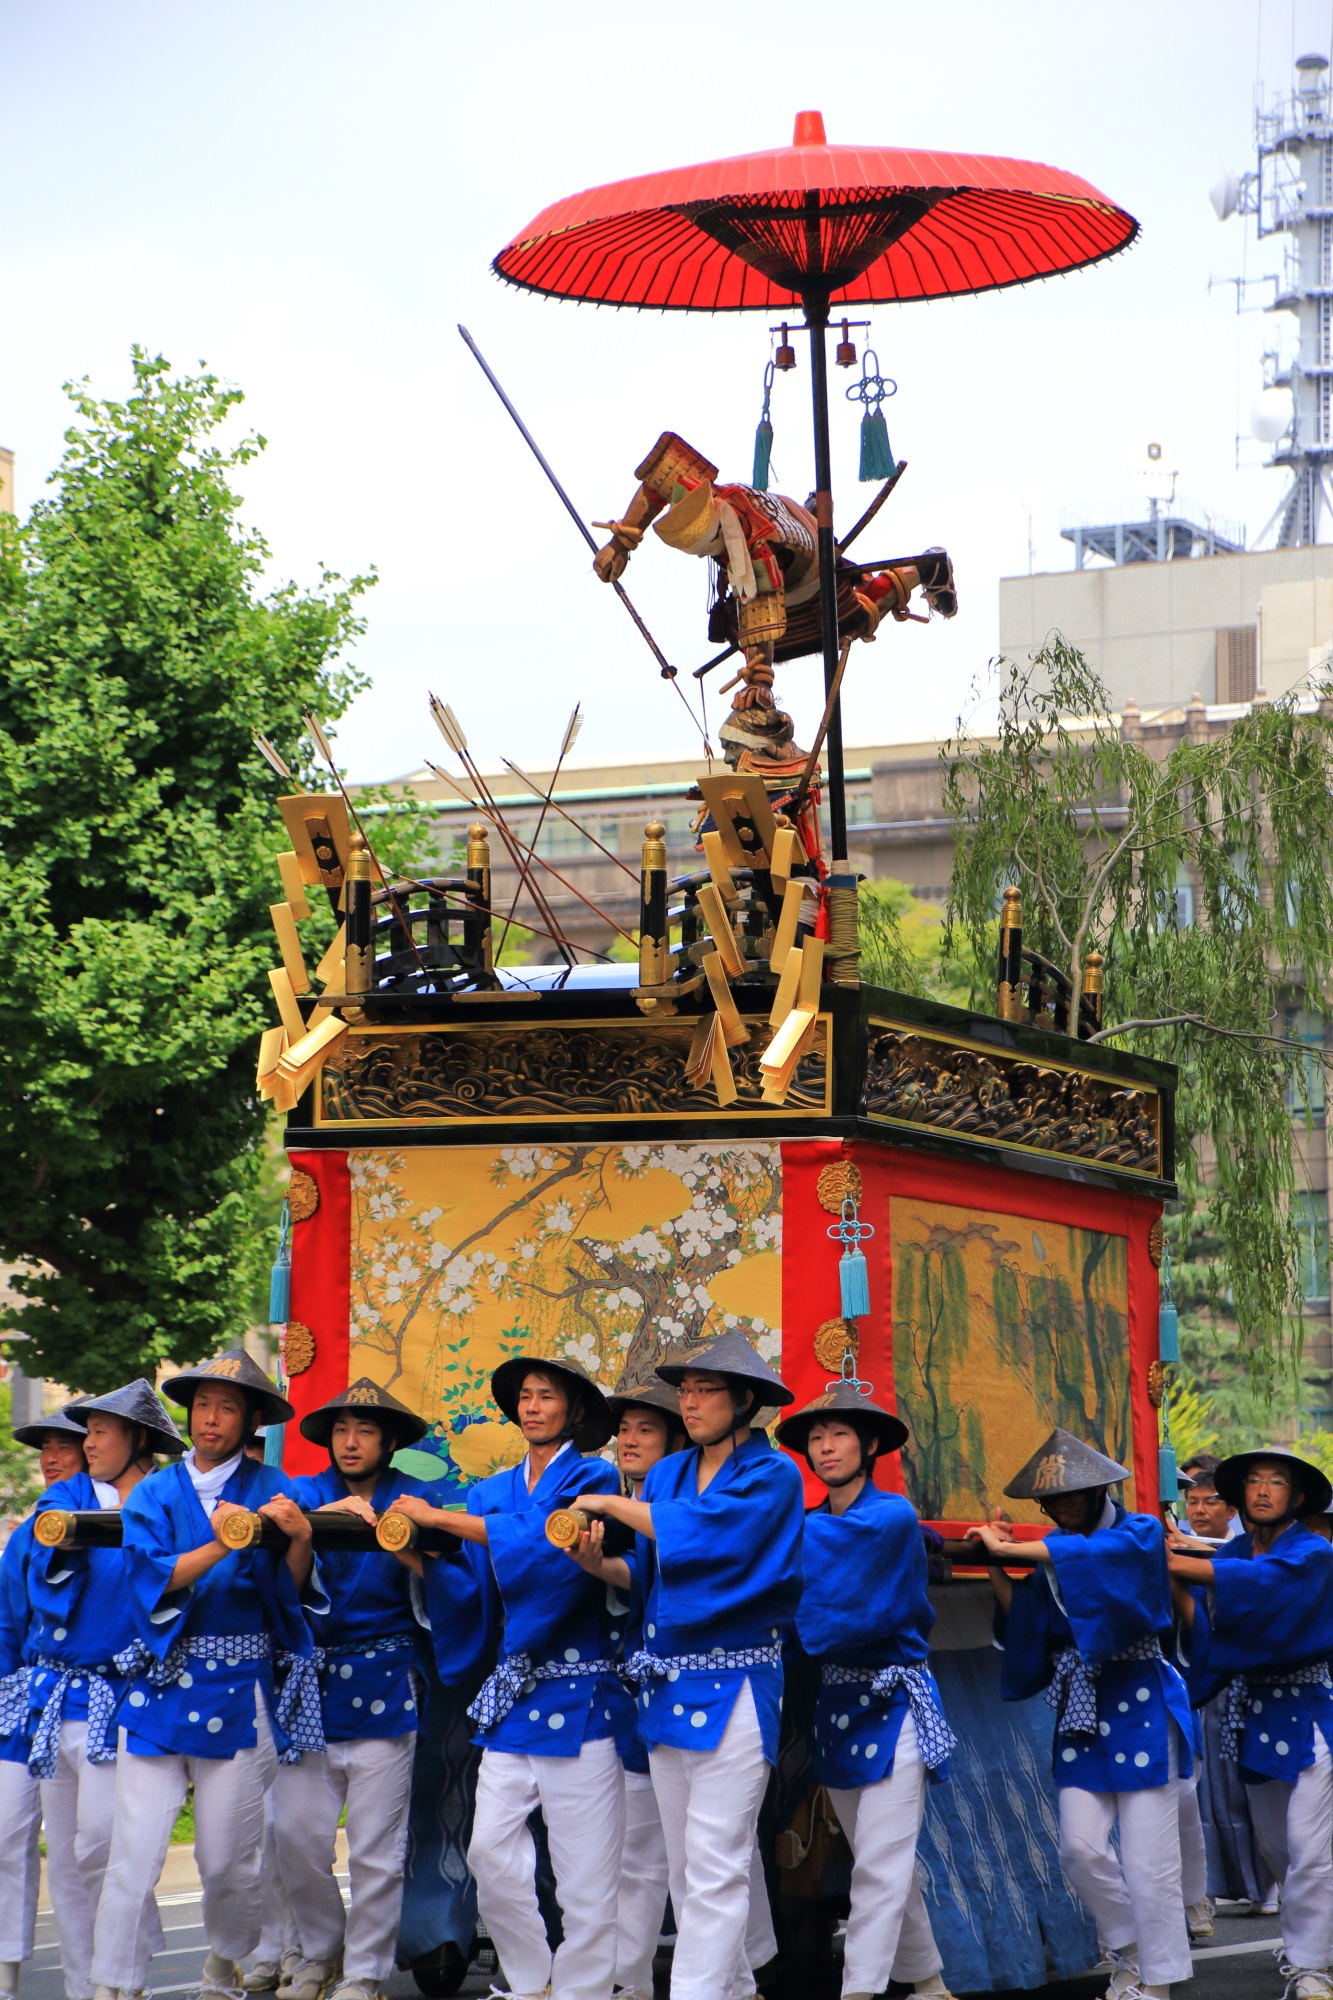 平家物語の宇治川の合戦を題材にした祇園祭の浄妙山